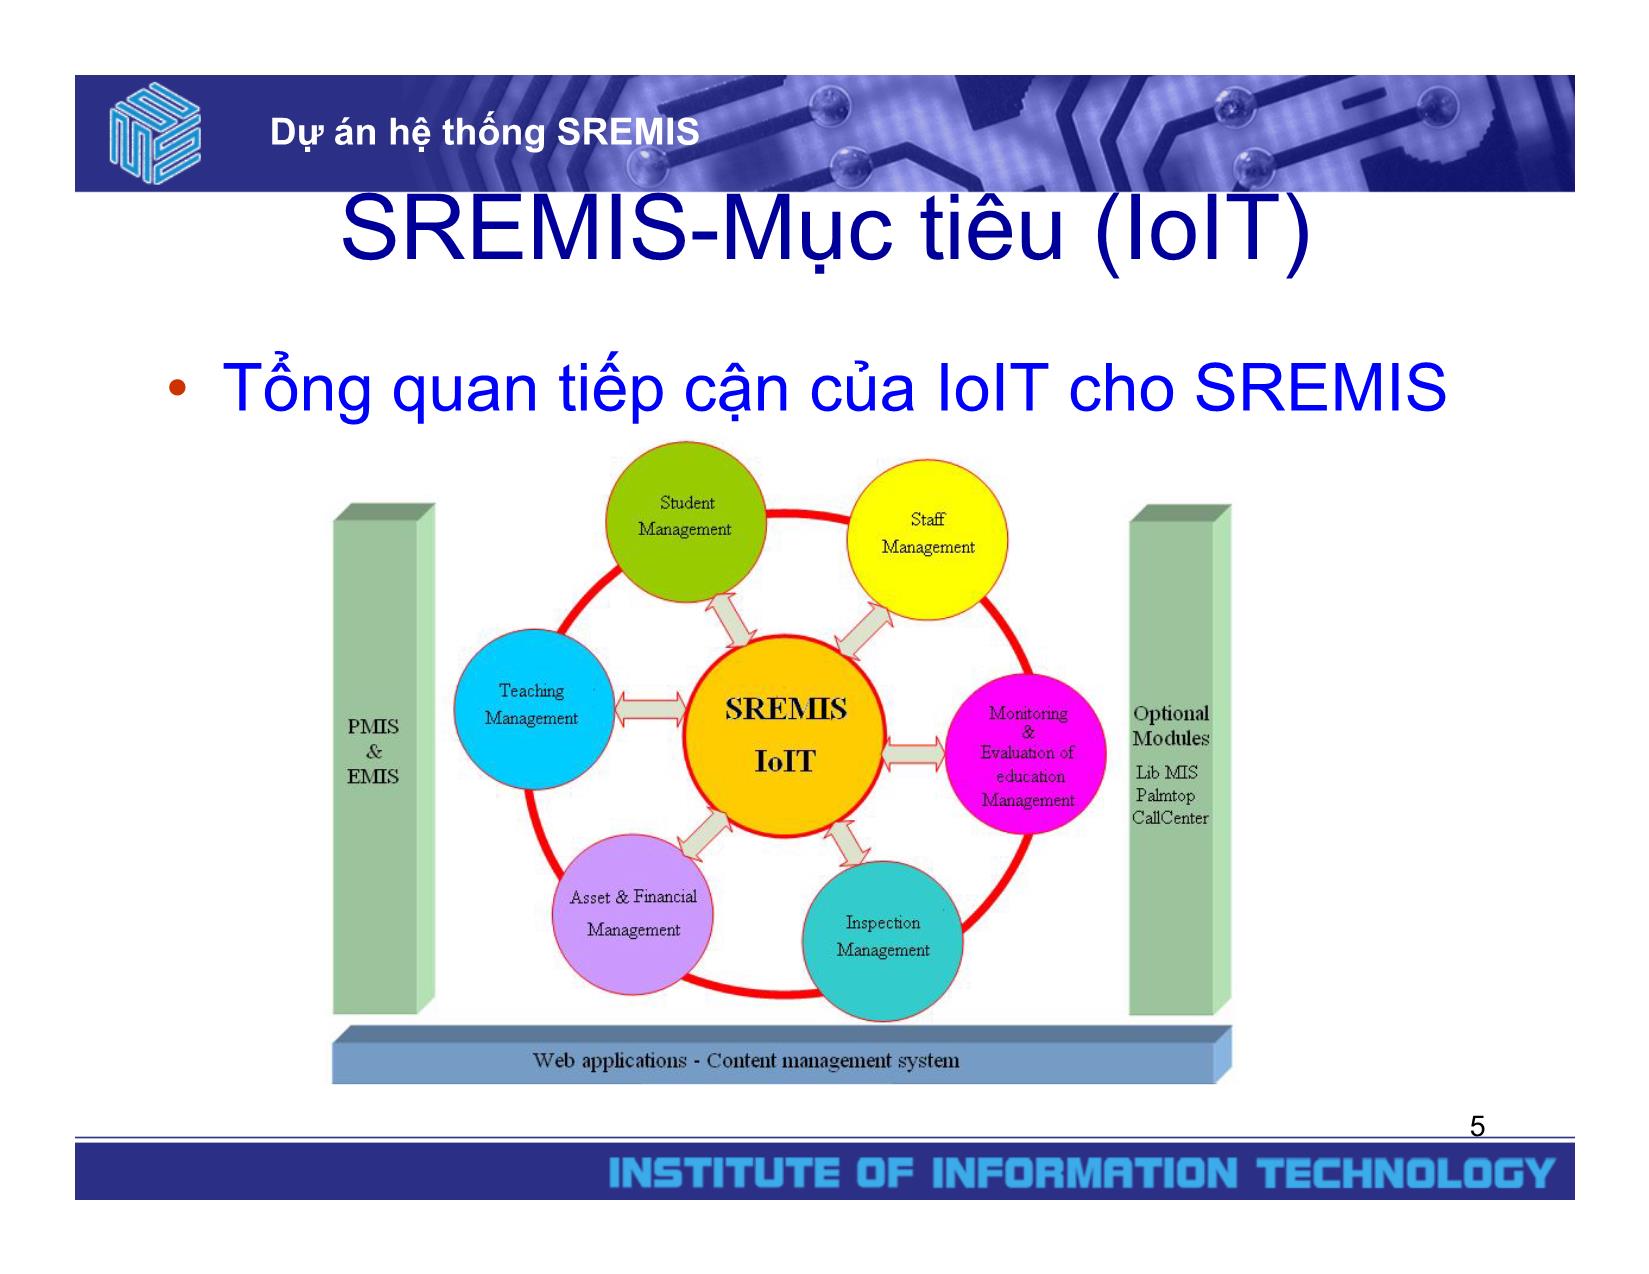 Dự án hệ thống SREMIS trang 5